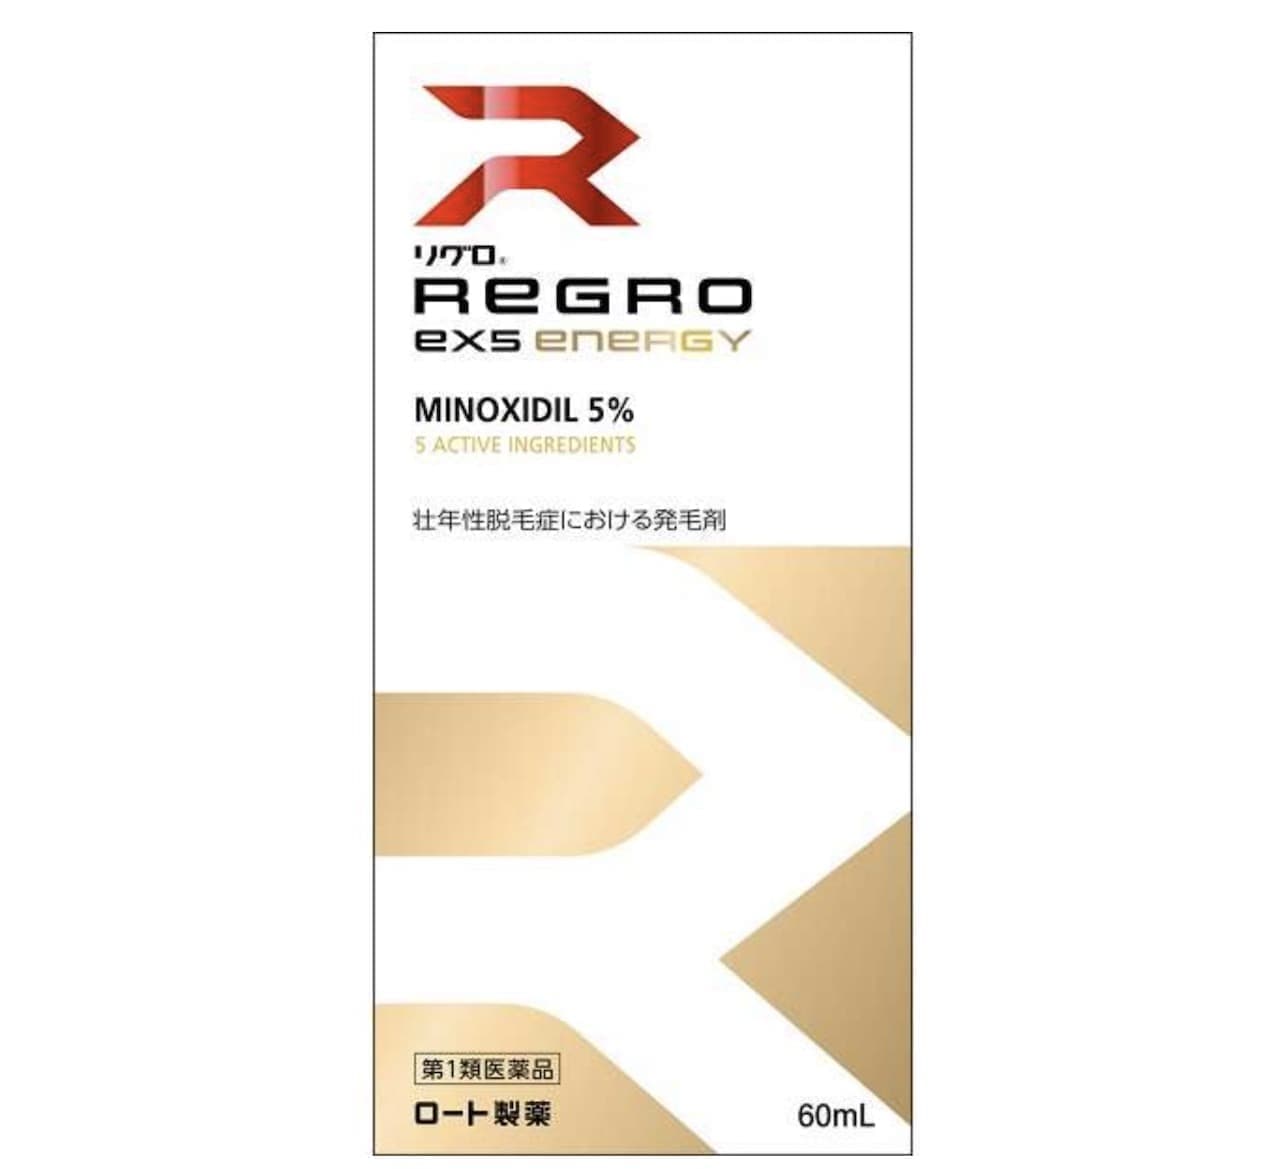 ロート製薬 【第1類医薬品】リグロEX5エナジー 60mL